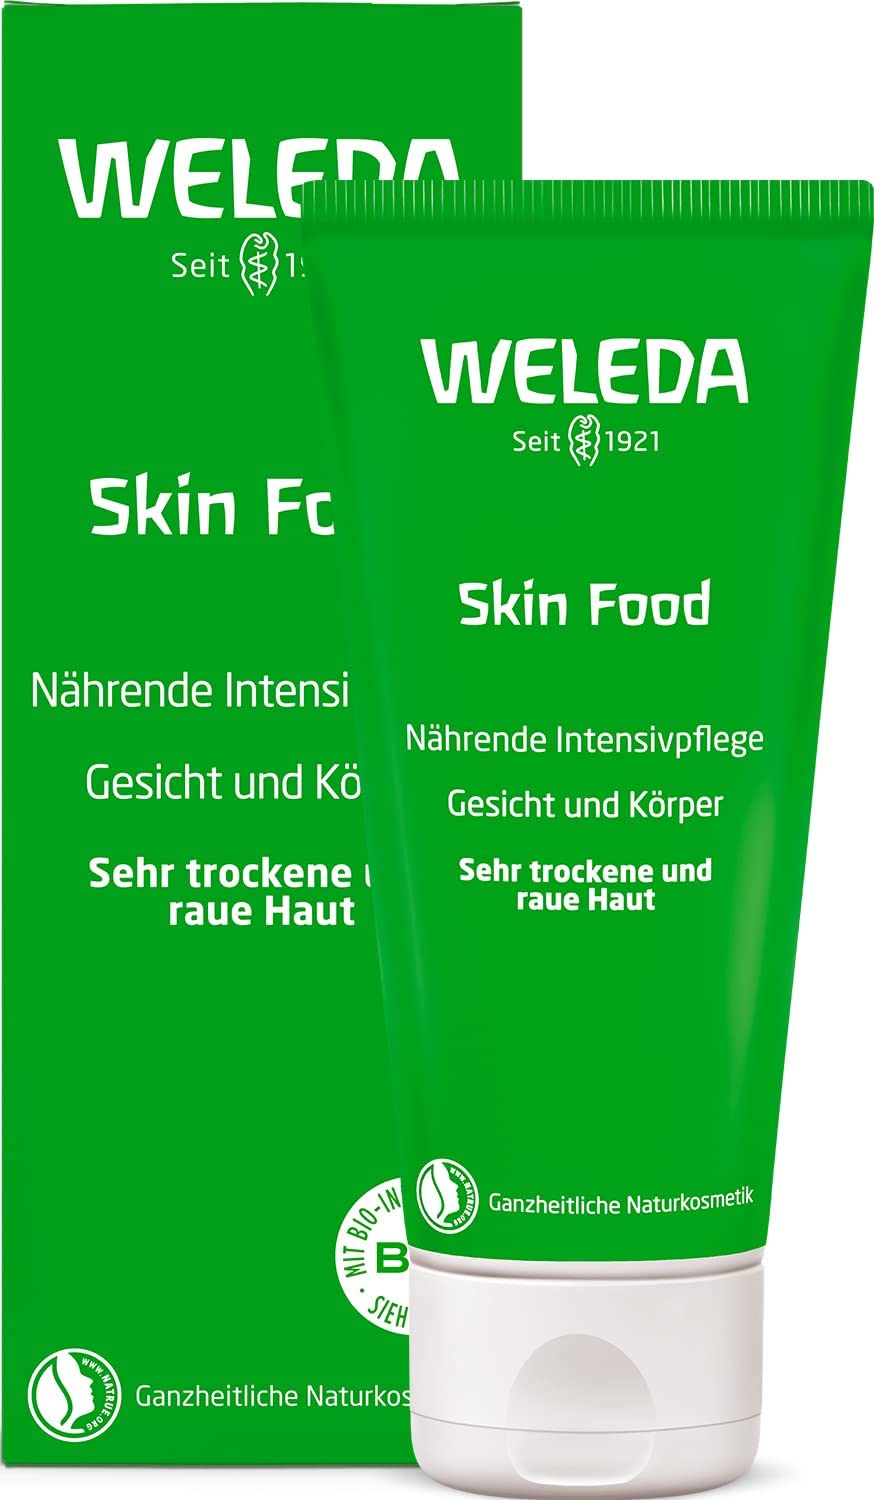 Weleda Skin Food | 75ml | Gesicht und Körper | Für sehr trockene und raue Haut